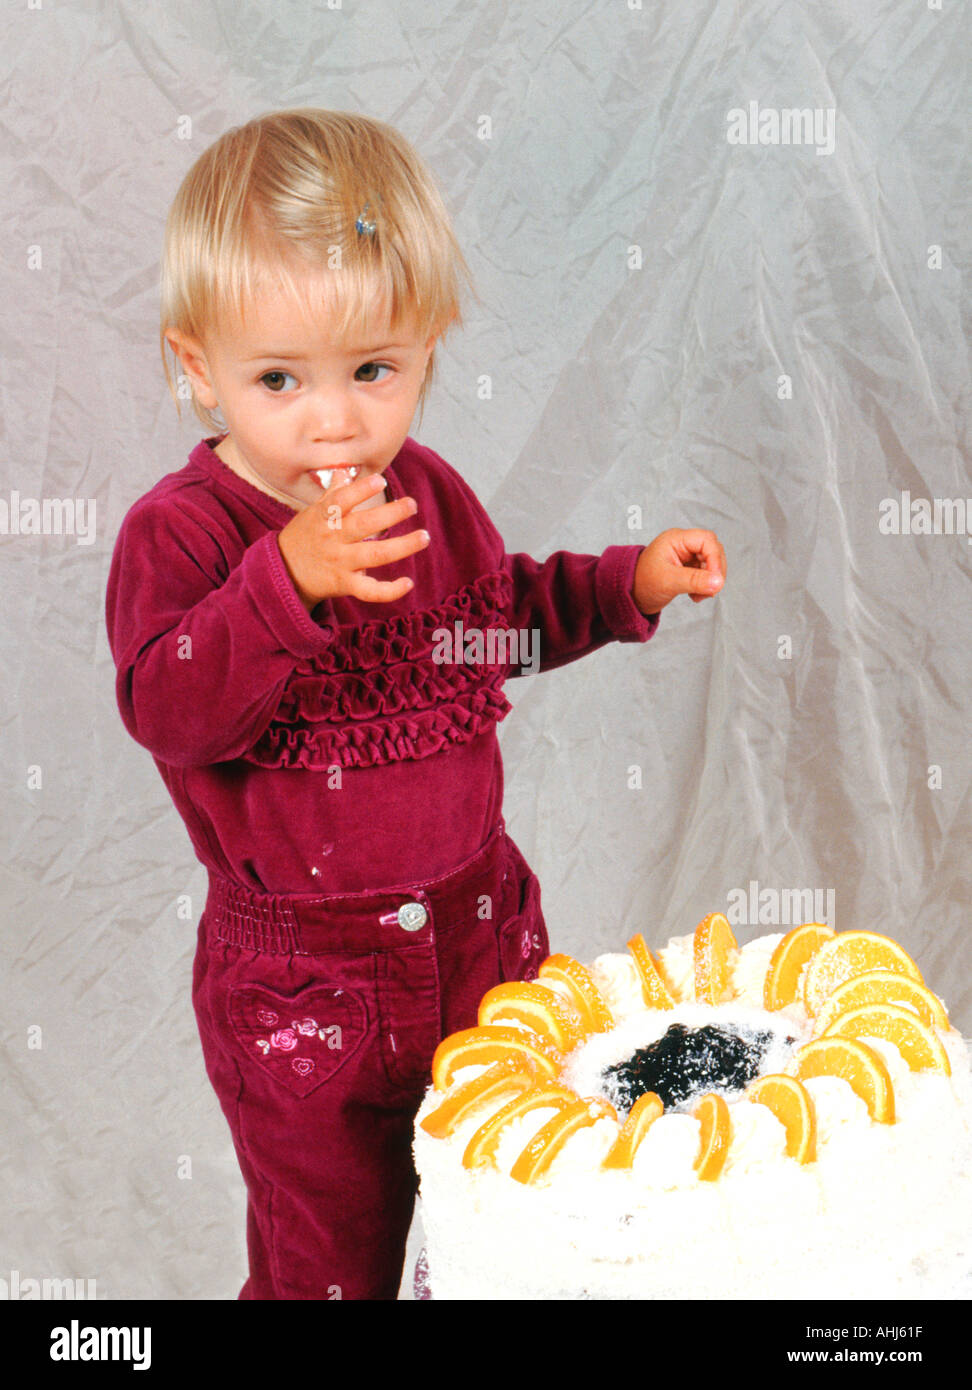 Anniversaire enfants bananes gâteau aux fruits Fraise kiwi coupé cropped fond blanc découpe contour Banque D'Images